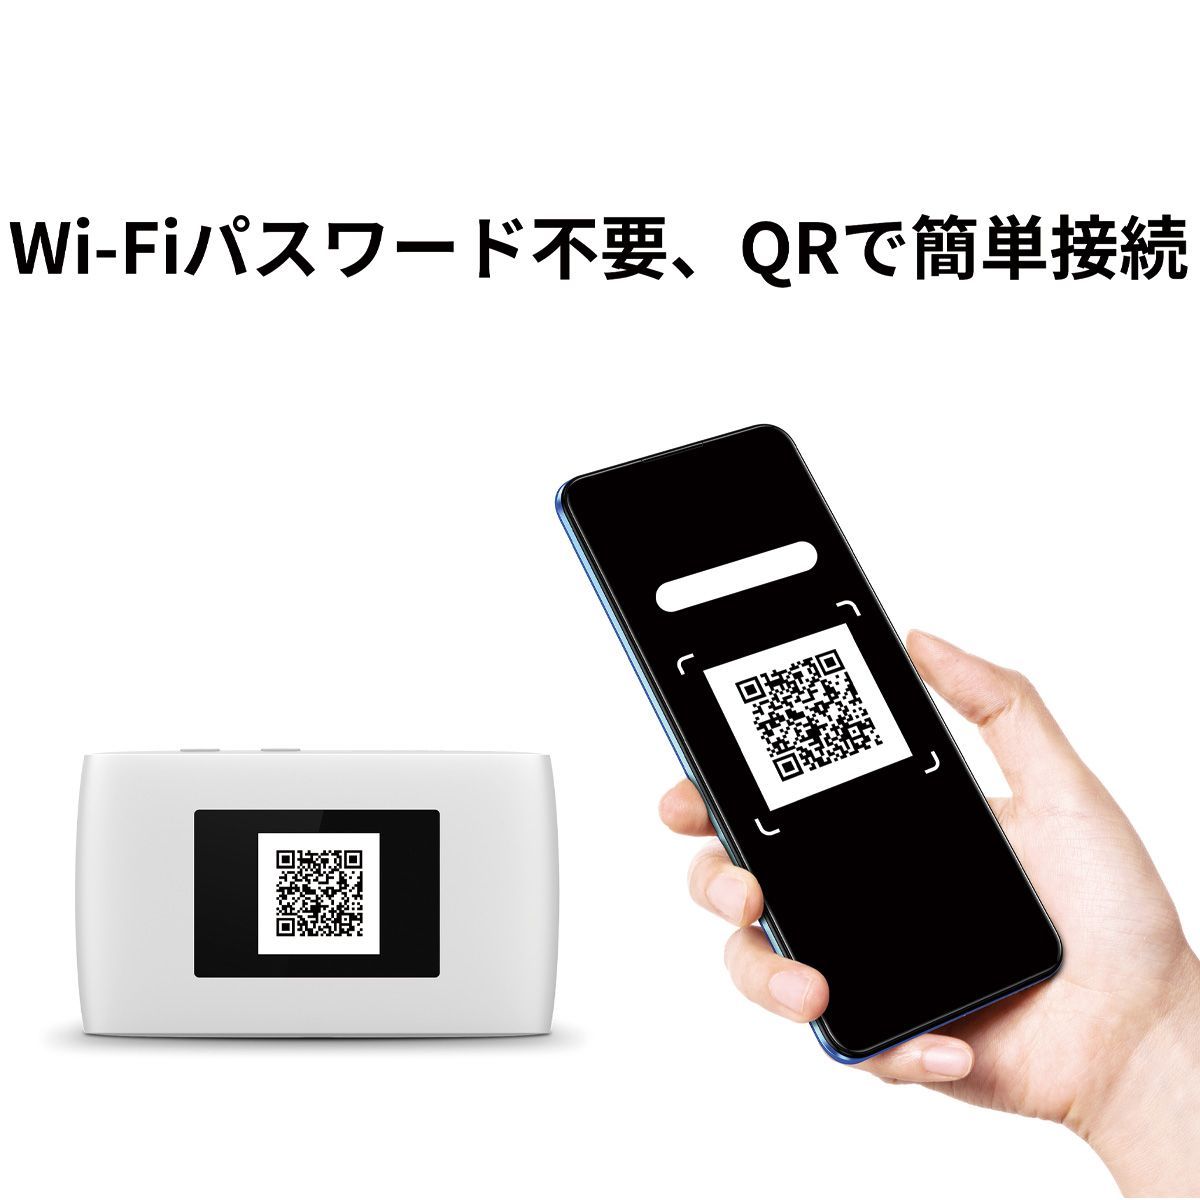 ZTE Cute Wi-Fi ポケット WiFi モバイルルーター【薄型軽量・長時間稼働・日本正規品】